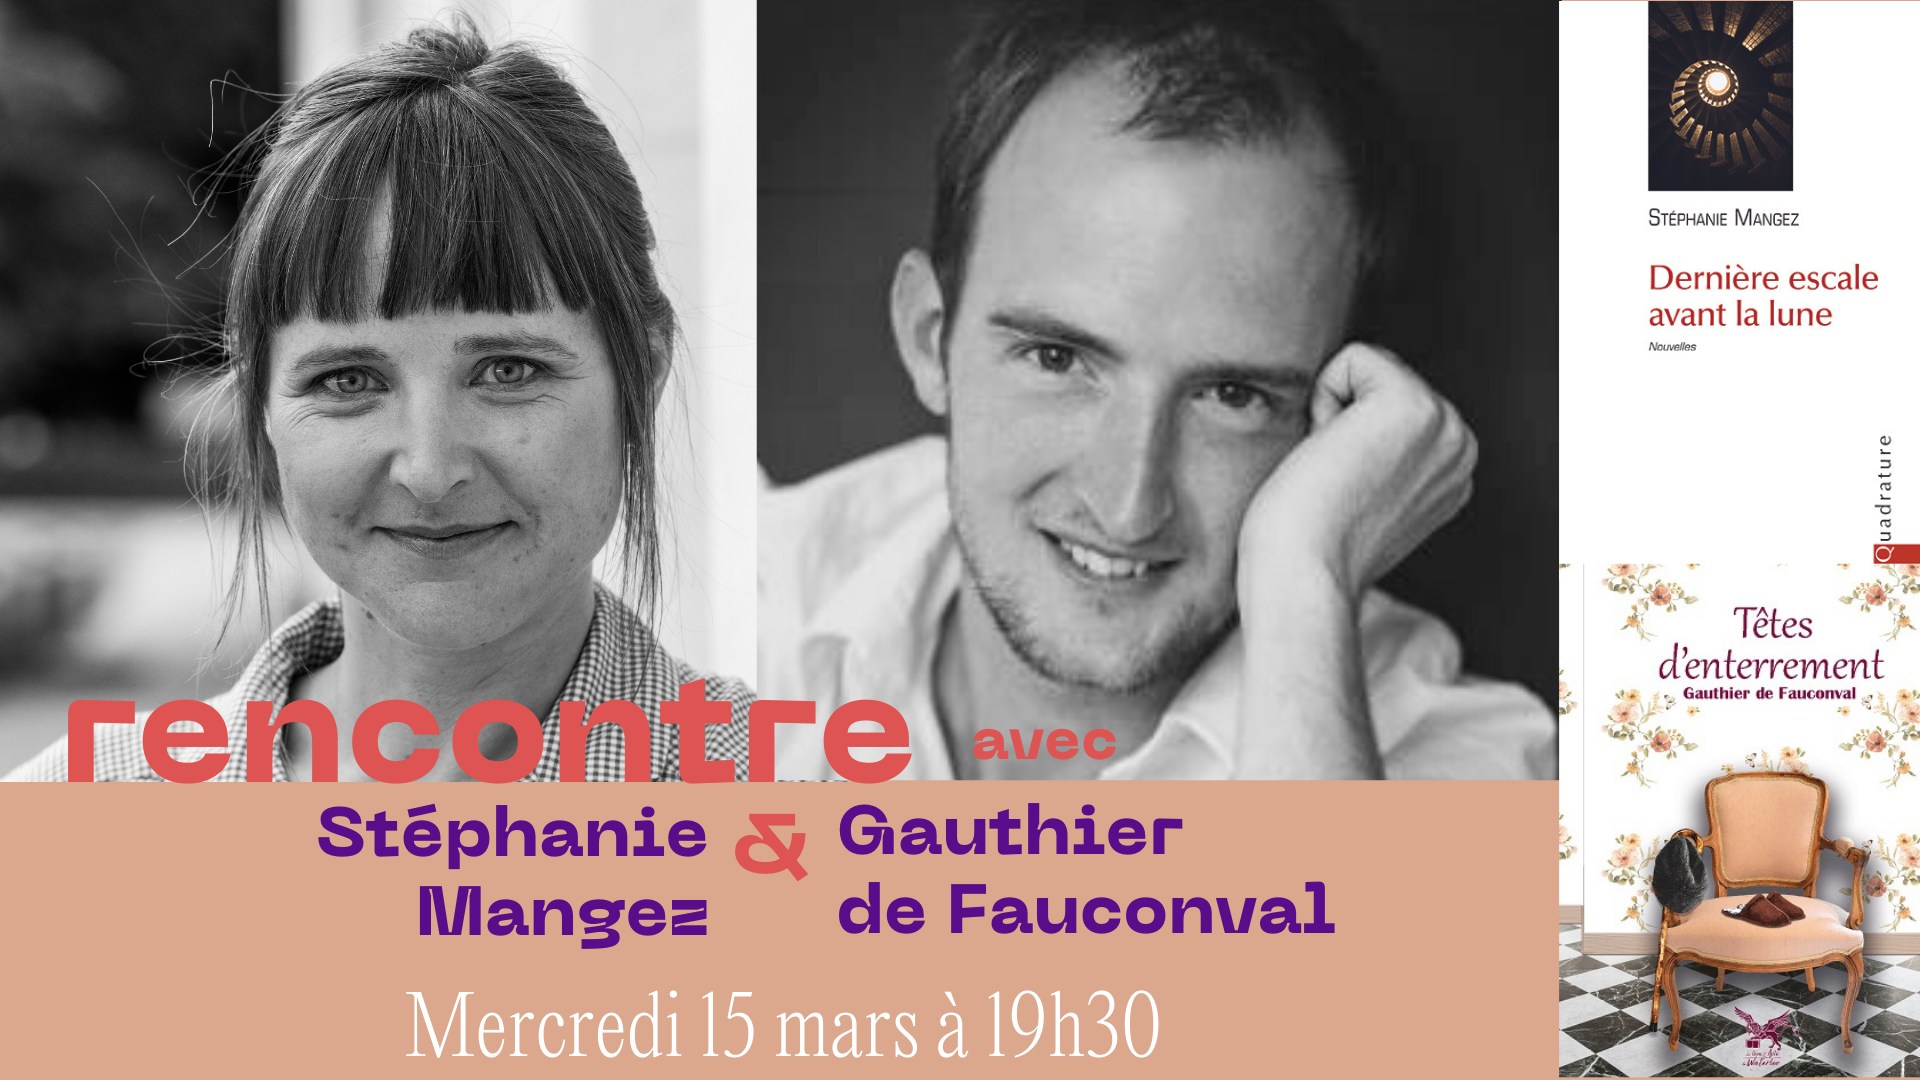 Rencontre avec Stéphanie Mangez et Gauthier de Fauconval